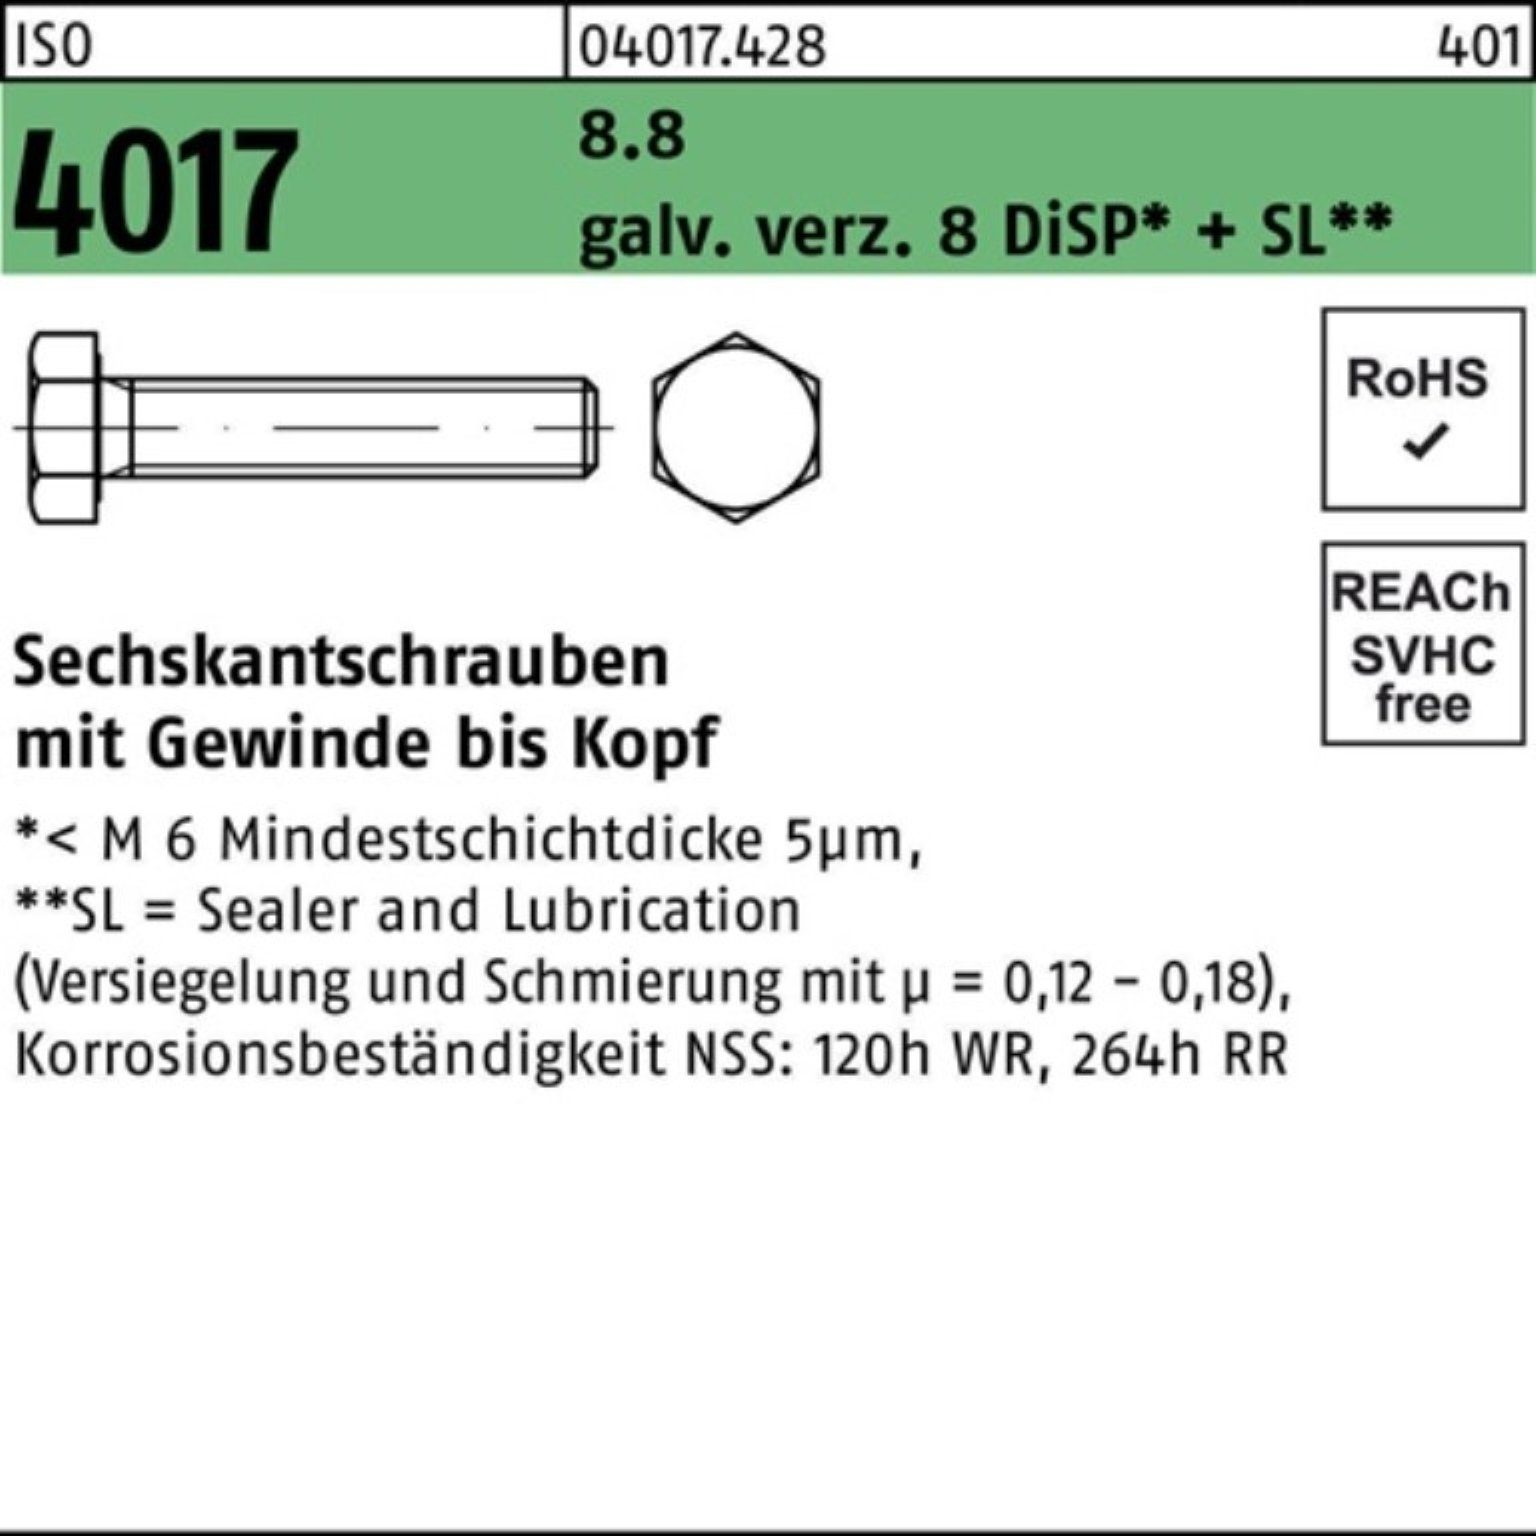 Bufab Sechskantschraube 100er M20x 4017 Pack VG 8 75 Sechskantschraube 8.8 DiSP ISO galv.verz